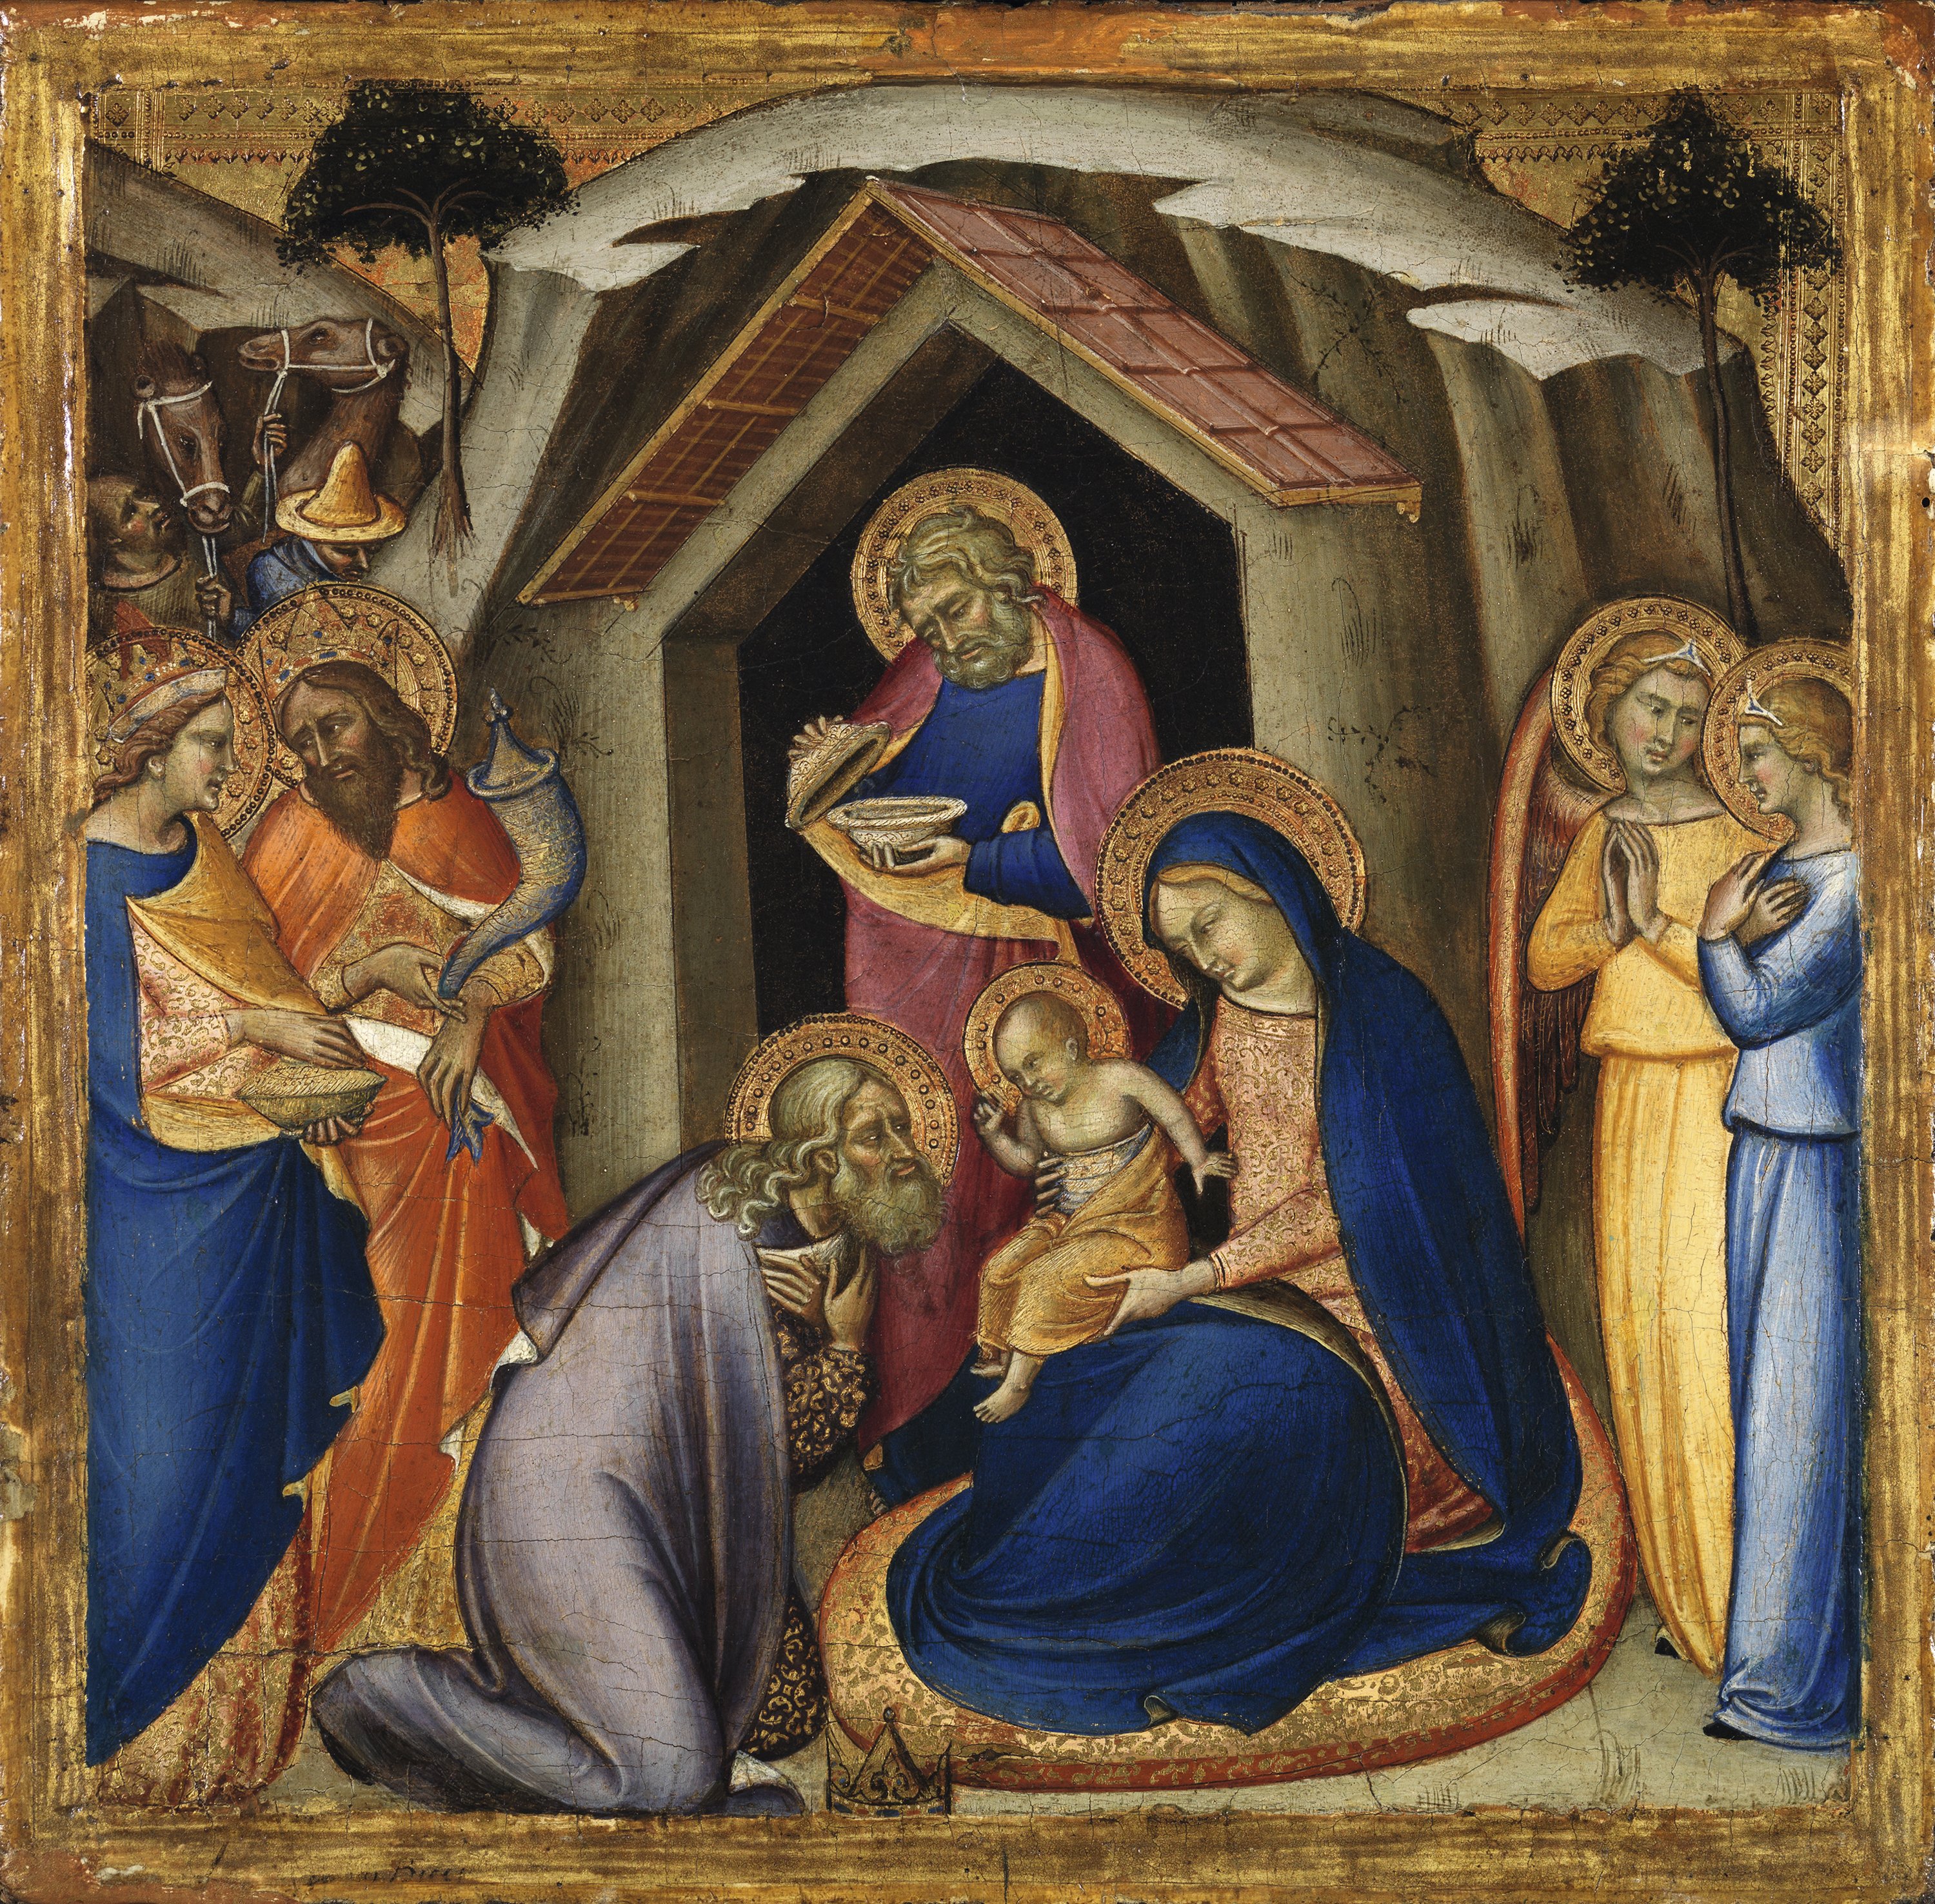 The Adoration of the Magi. La Adoración de los Reyes, c. 1360-1365